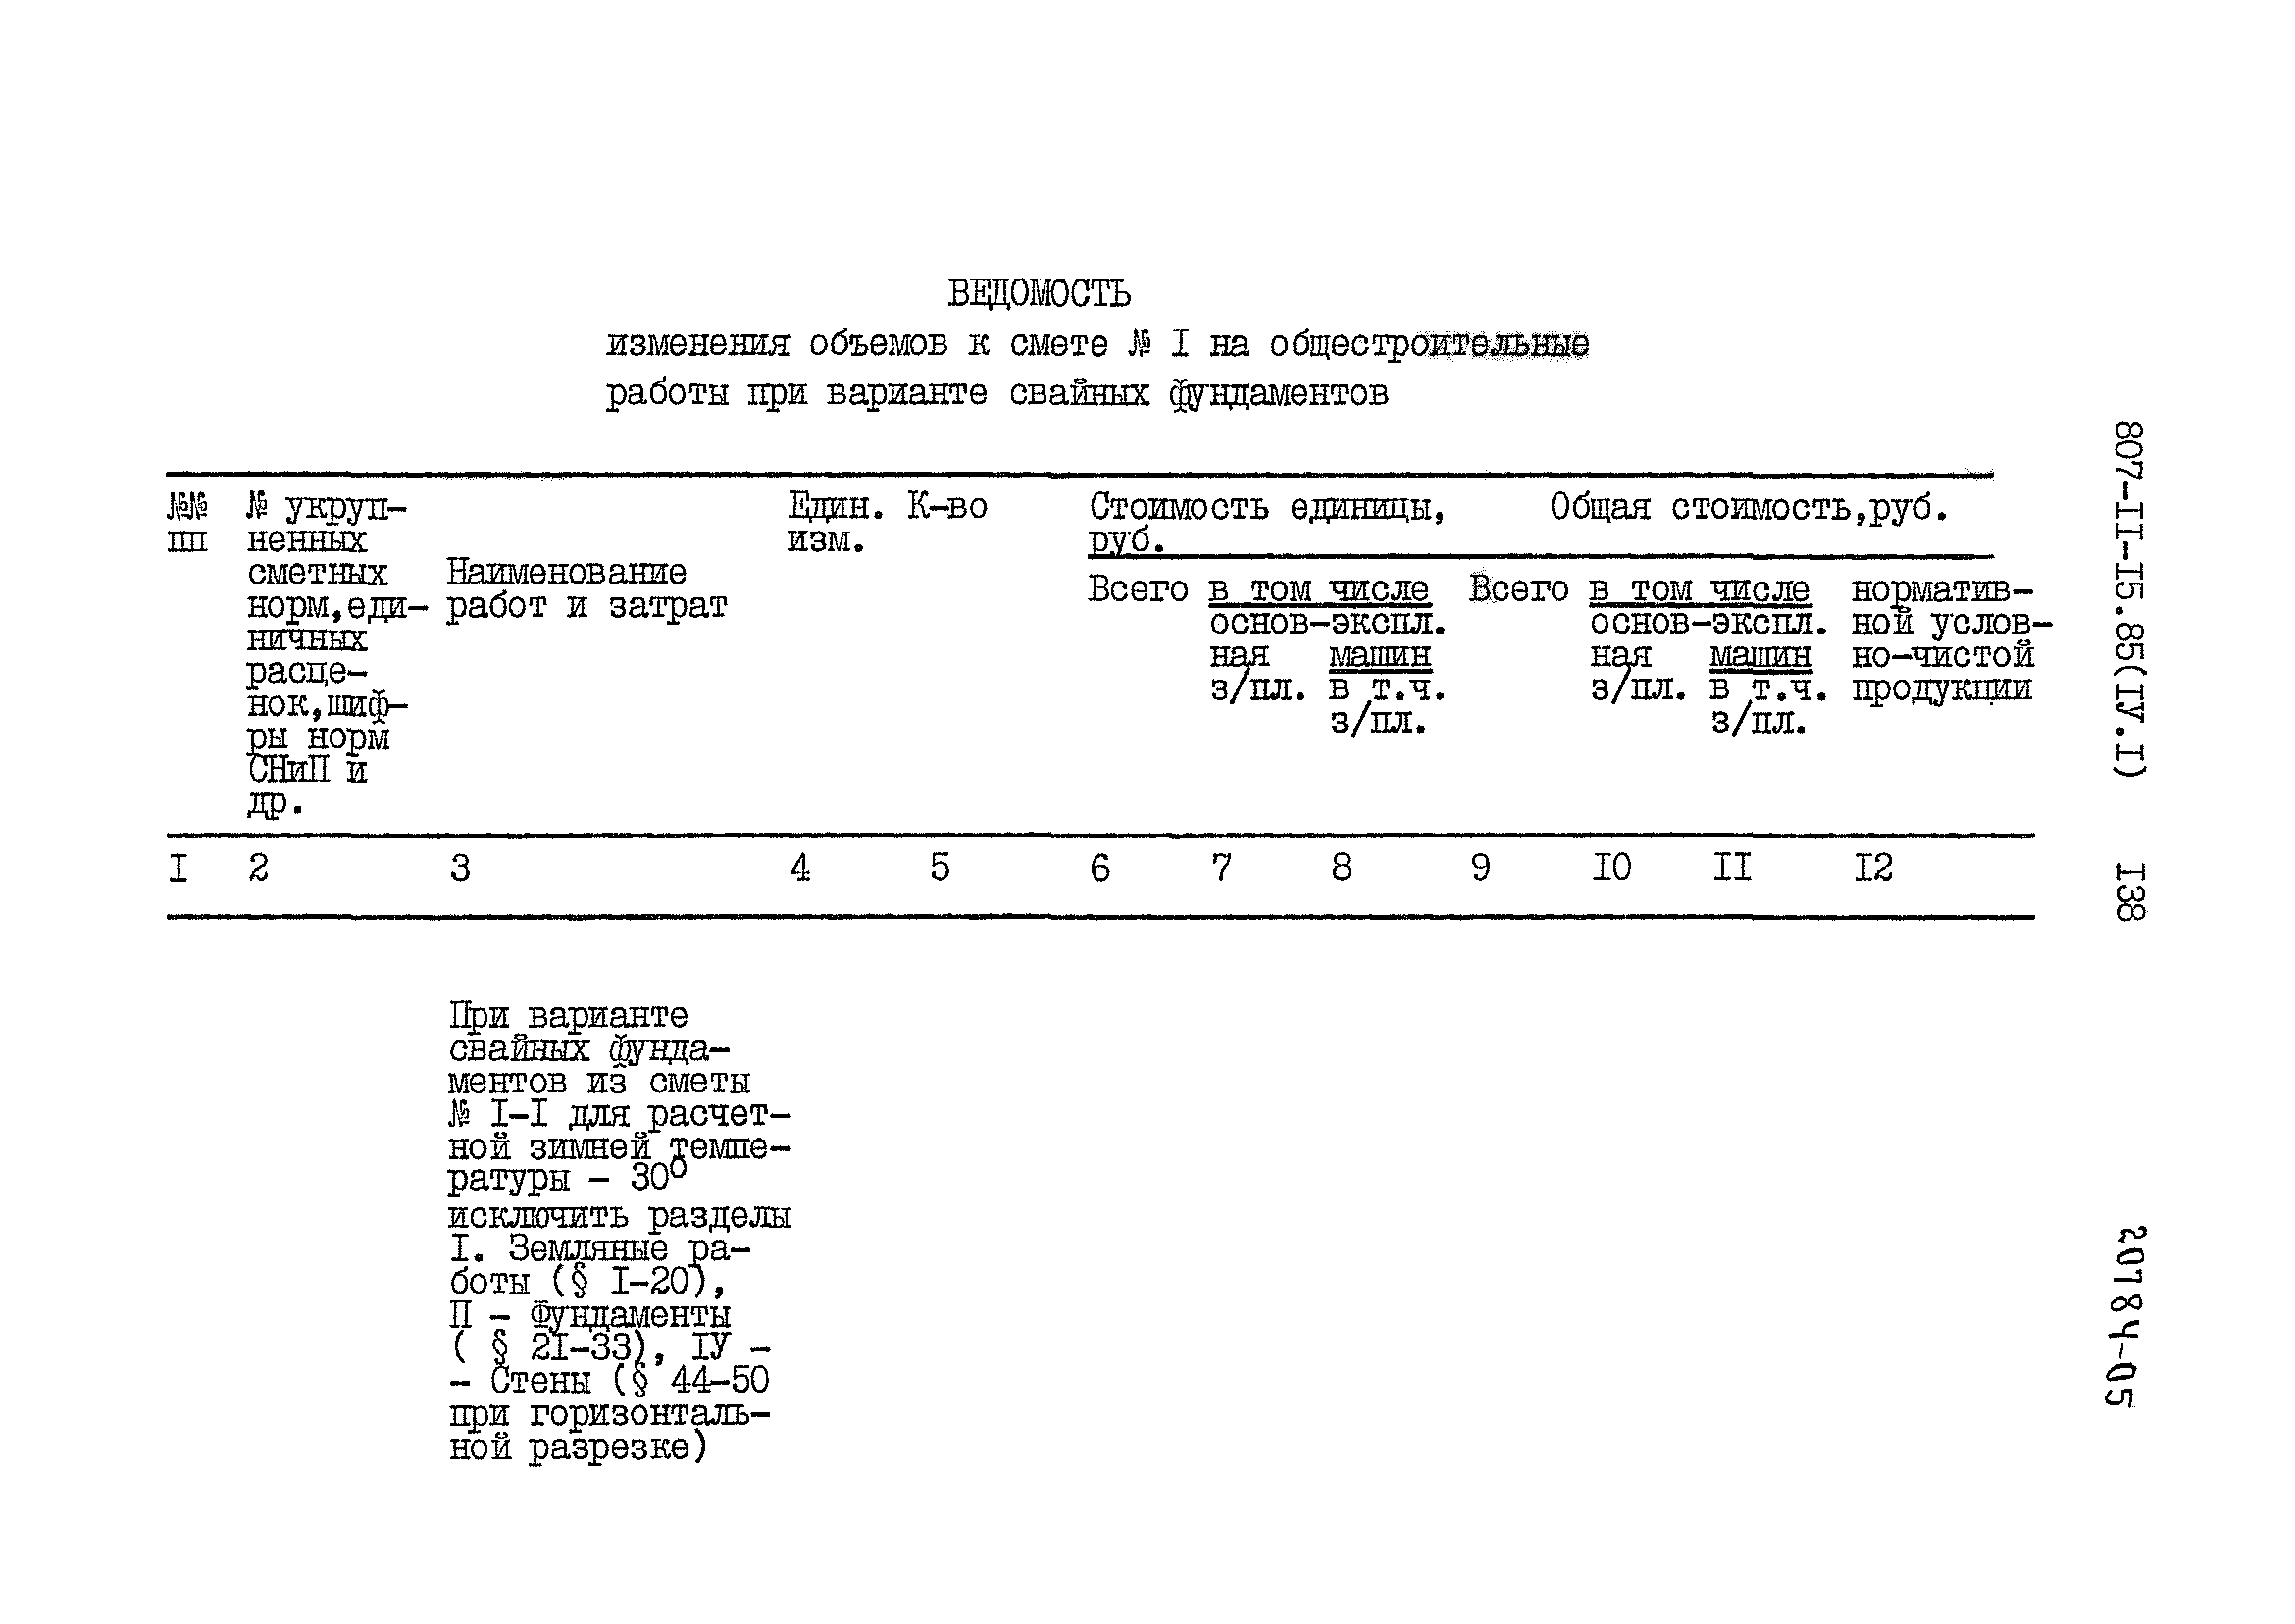 Типовой проект 807-11-15.85